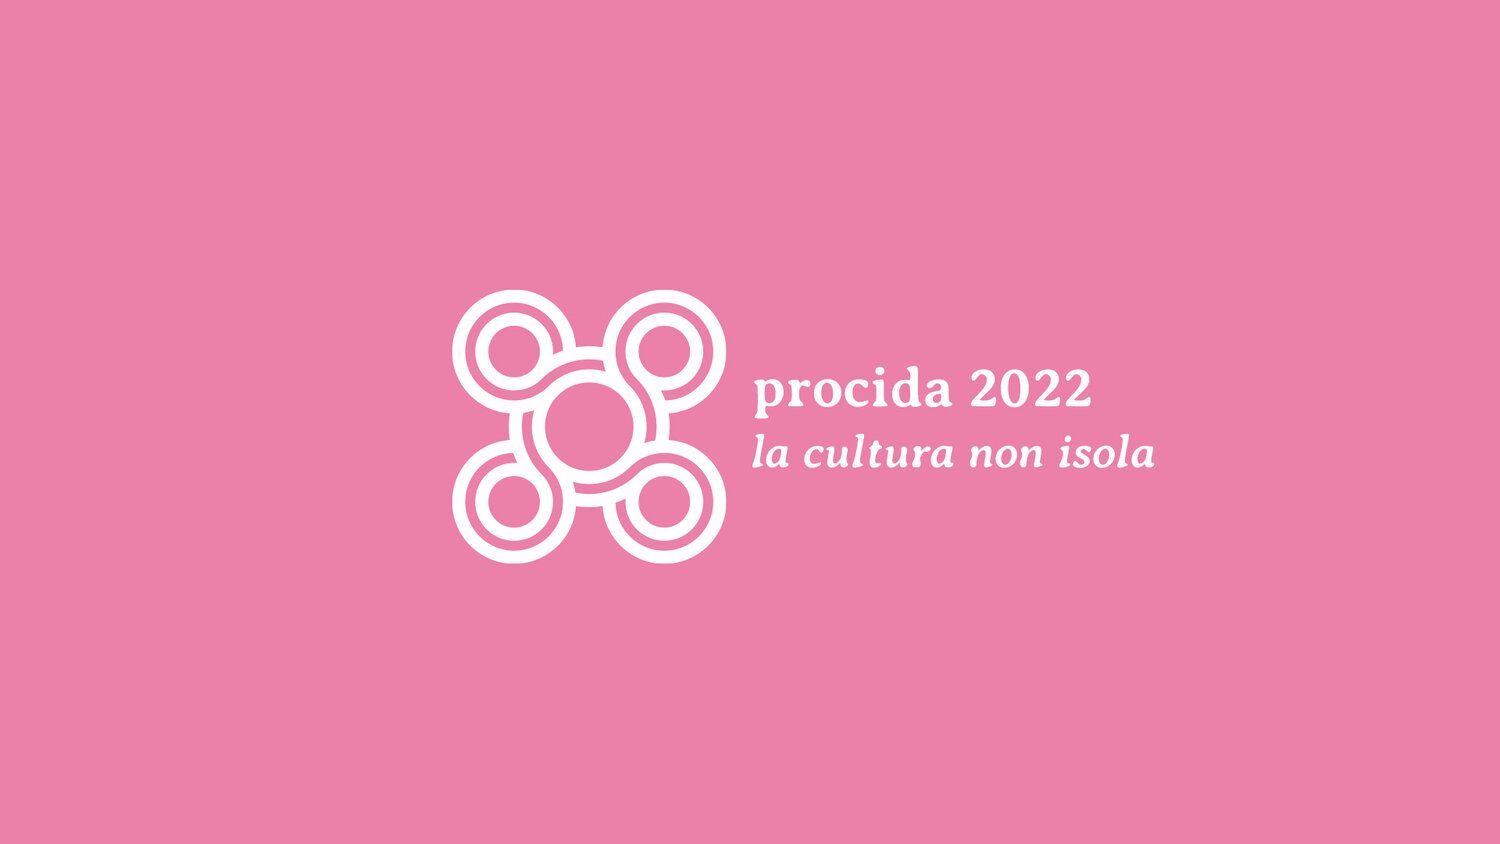 www.procida2022.com